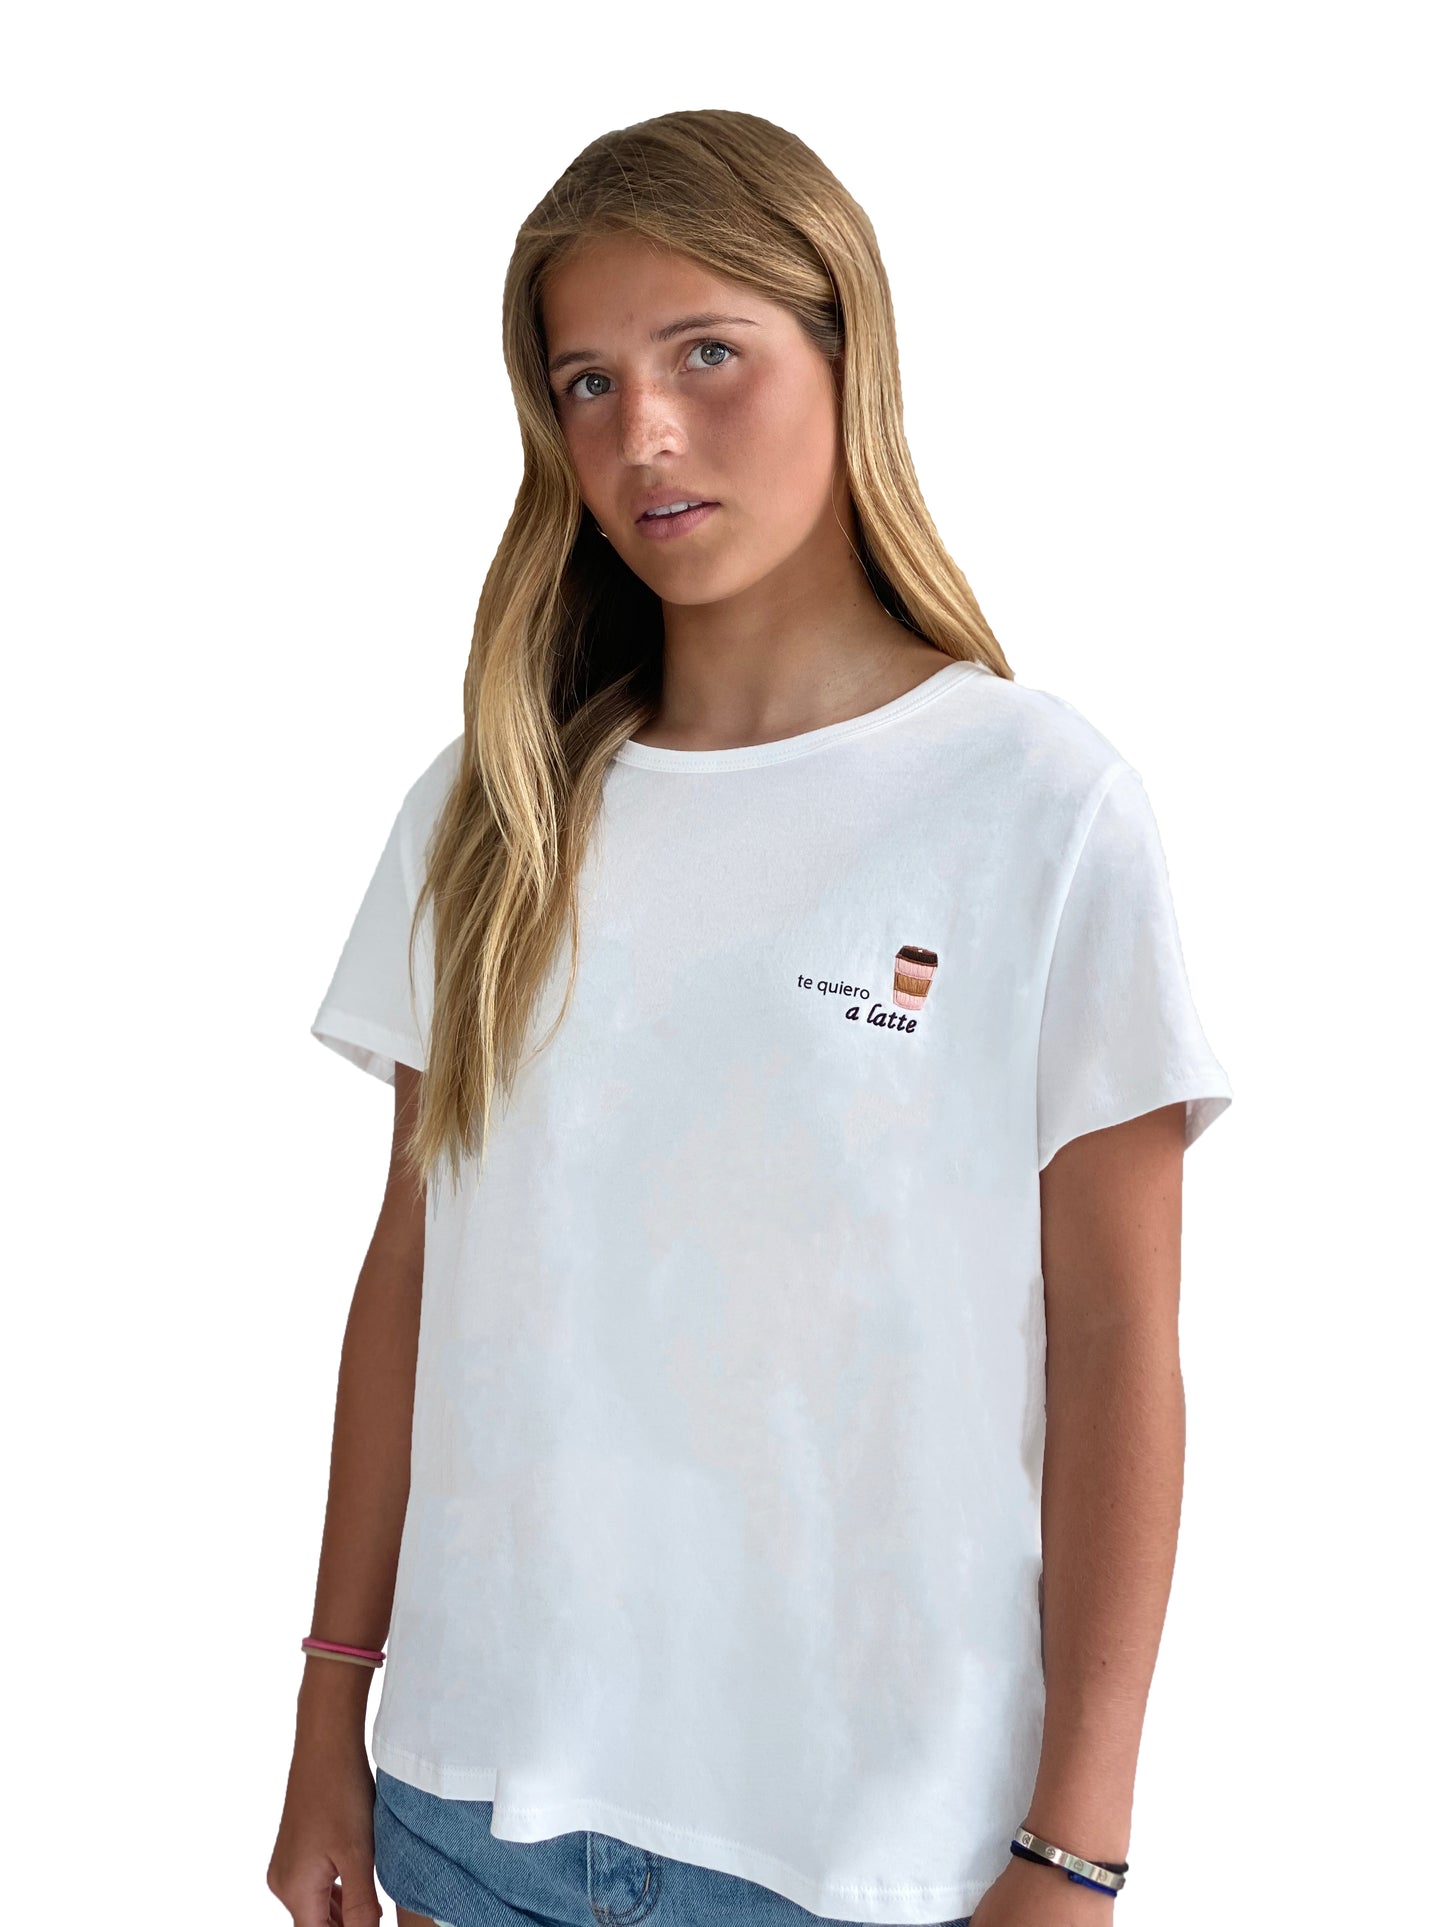 Women's T-Shirt - "Te quiero a latte"